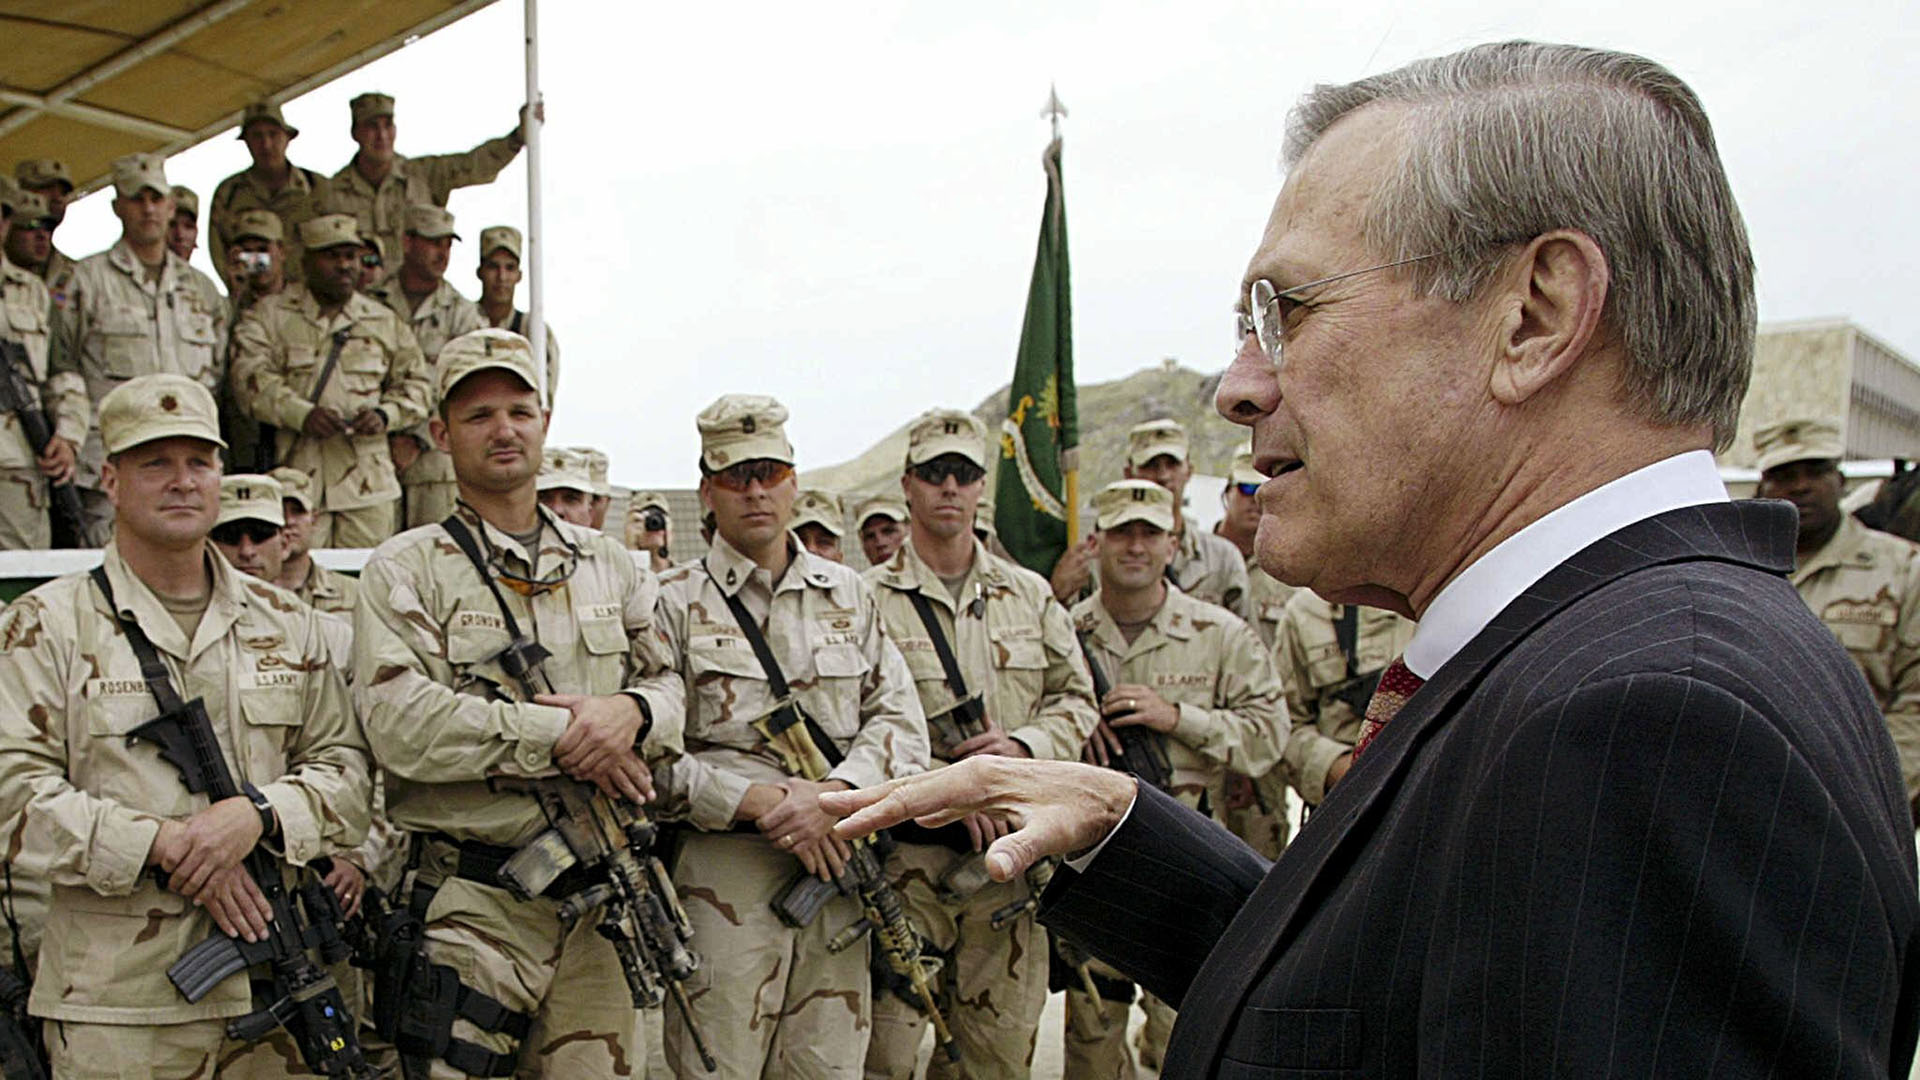 El secretario de Defensa de Estados Unidos, Donald Rumsfeld (izq.), Se reúne el 1 de mayo de 2003 con las tropas de las Fuerzas Especiales de Estados Unidos en la base estadounidense de Kabul. Rumsfeld declaró el fin de las operaciones de "combate mayor" y una nueva era de estabilidad y reconstrucción en Afganistán, 18 meses después de que las fuerzas lideradas por Estados Unidos derrocaran al régimen talibán. (AFP PHOTO / Luke FRAZZAL)